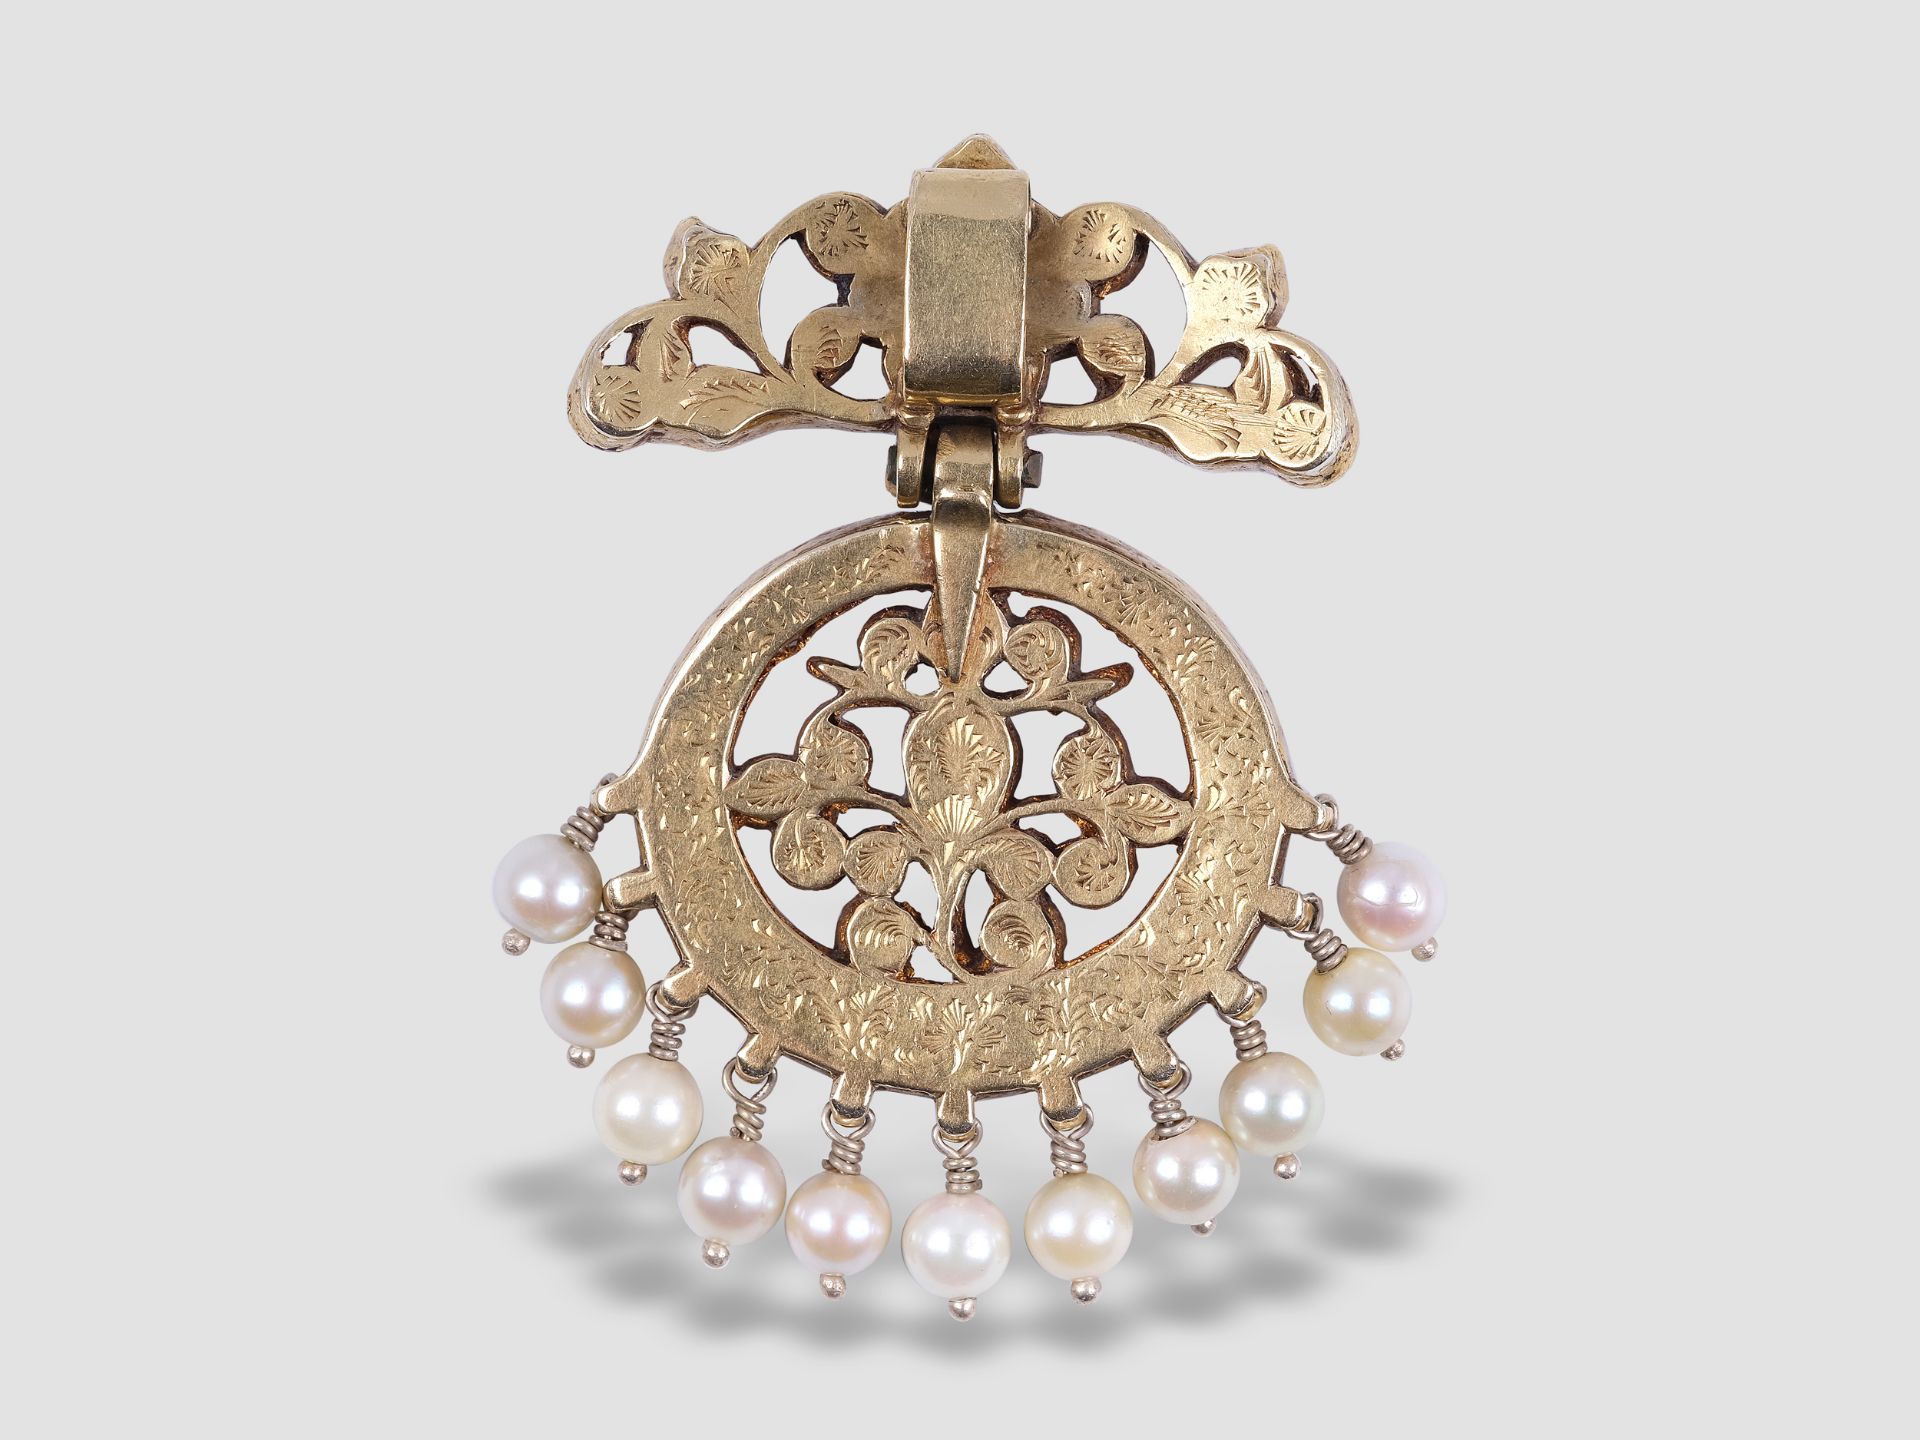 Elegant Antique Indian Pendant, Manufactured 1750 - 1850, Gold, ca. 24 carat - Image 2 of 2